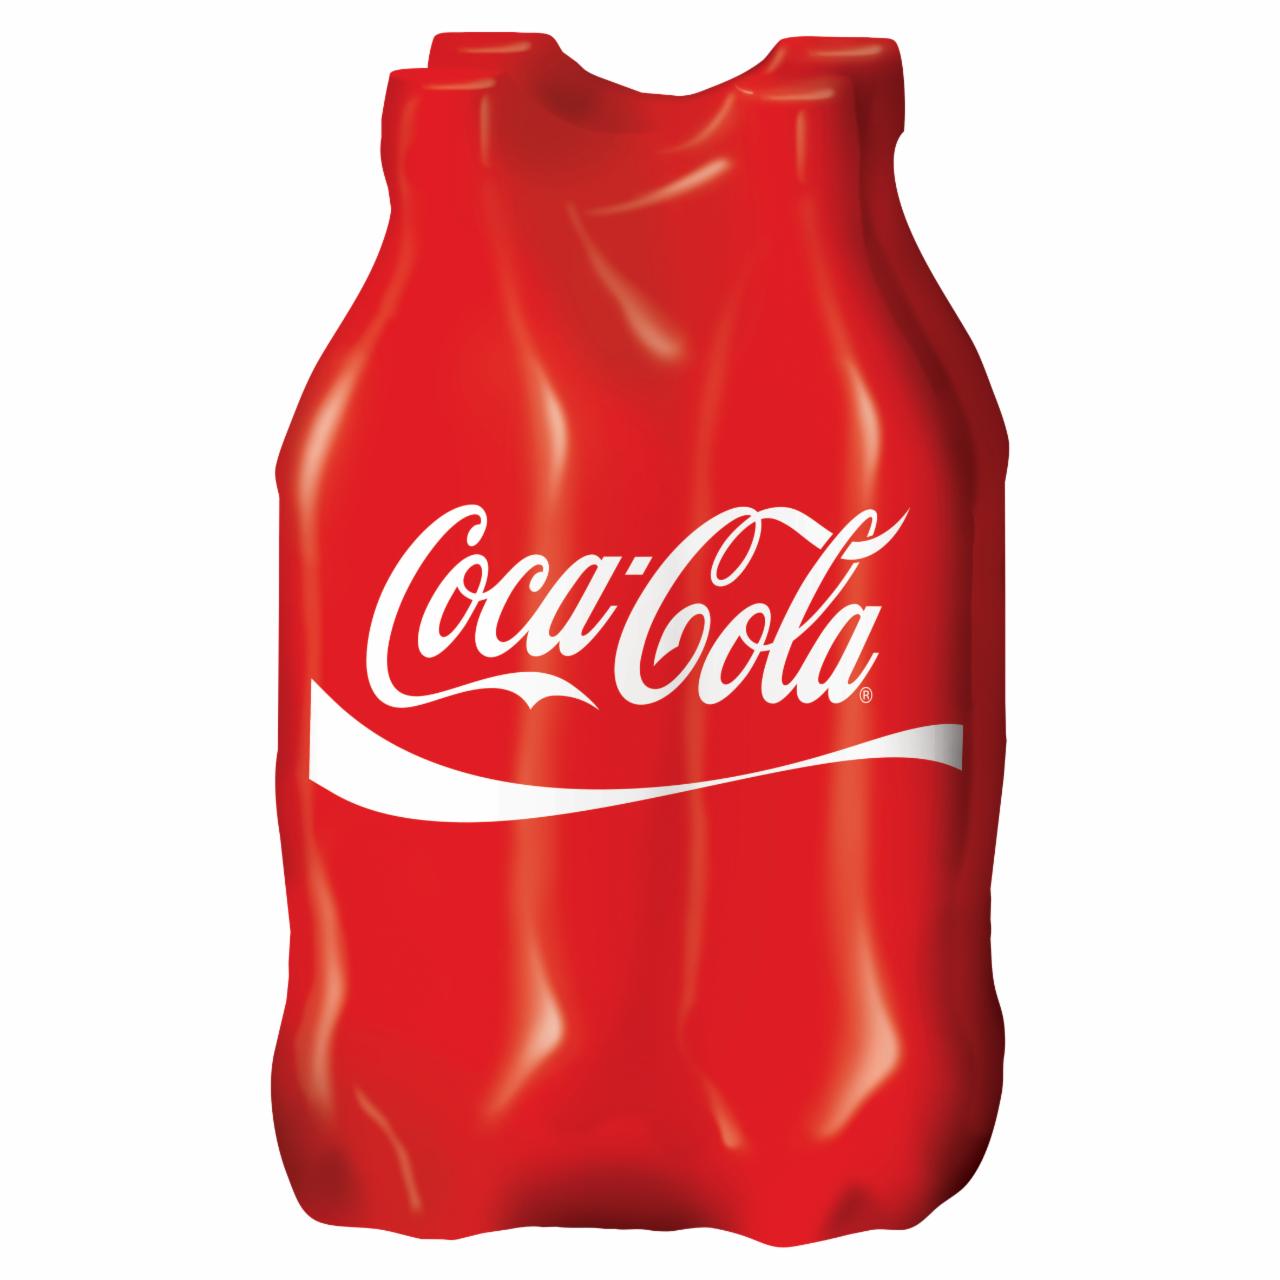 Képek - Coca-Cola colaízű szénsavas üdítőital 4 x 500 ml